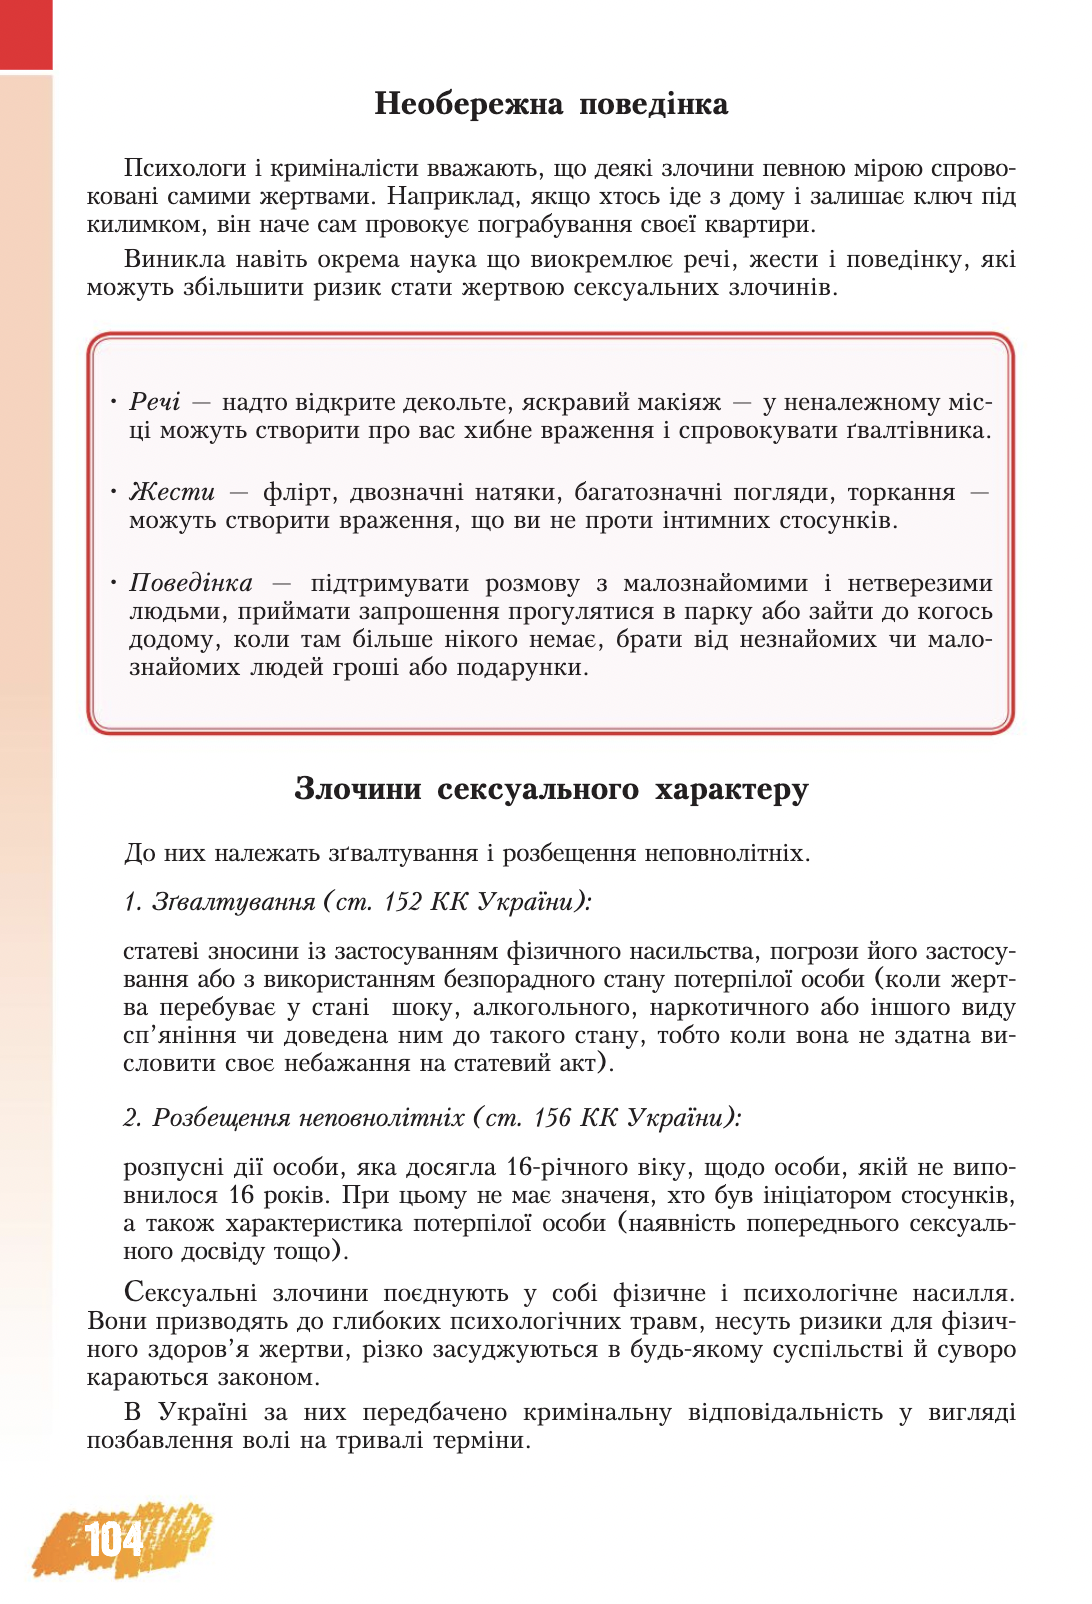 Изнасилование из-за короткой юбки и каблуков? Украинцы возмутились из-за учебника "Основы здоровья" для 8-го класса. Фото